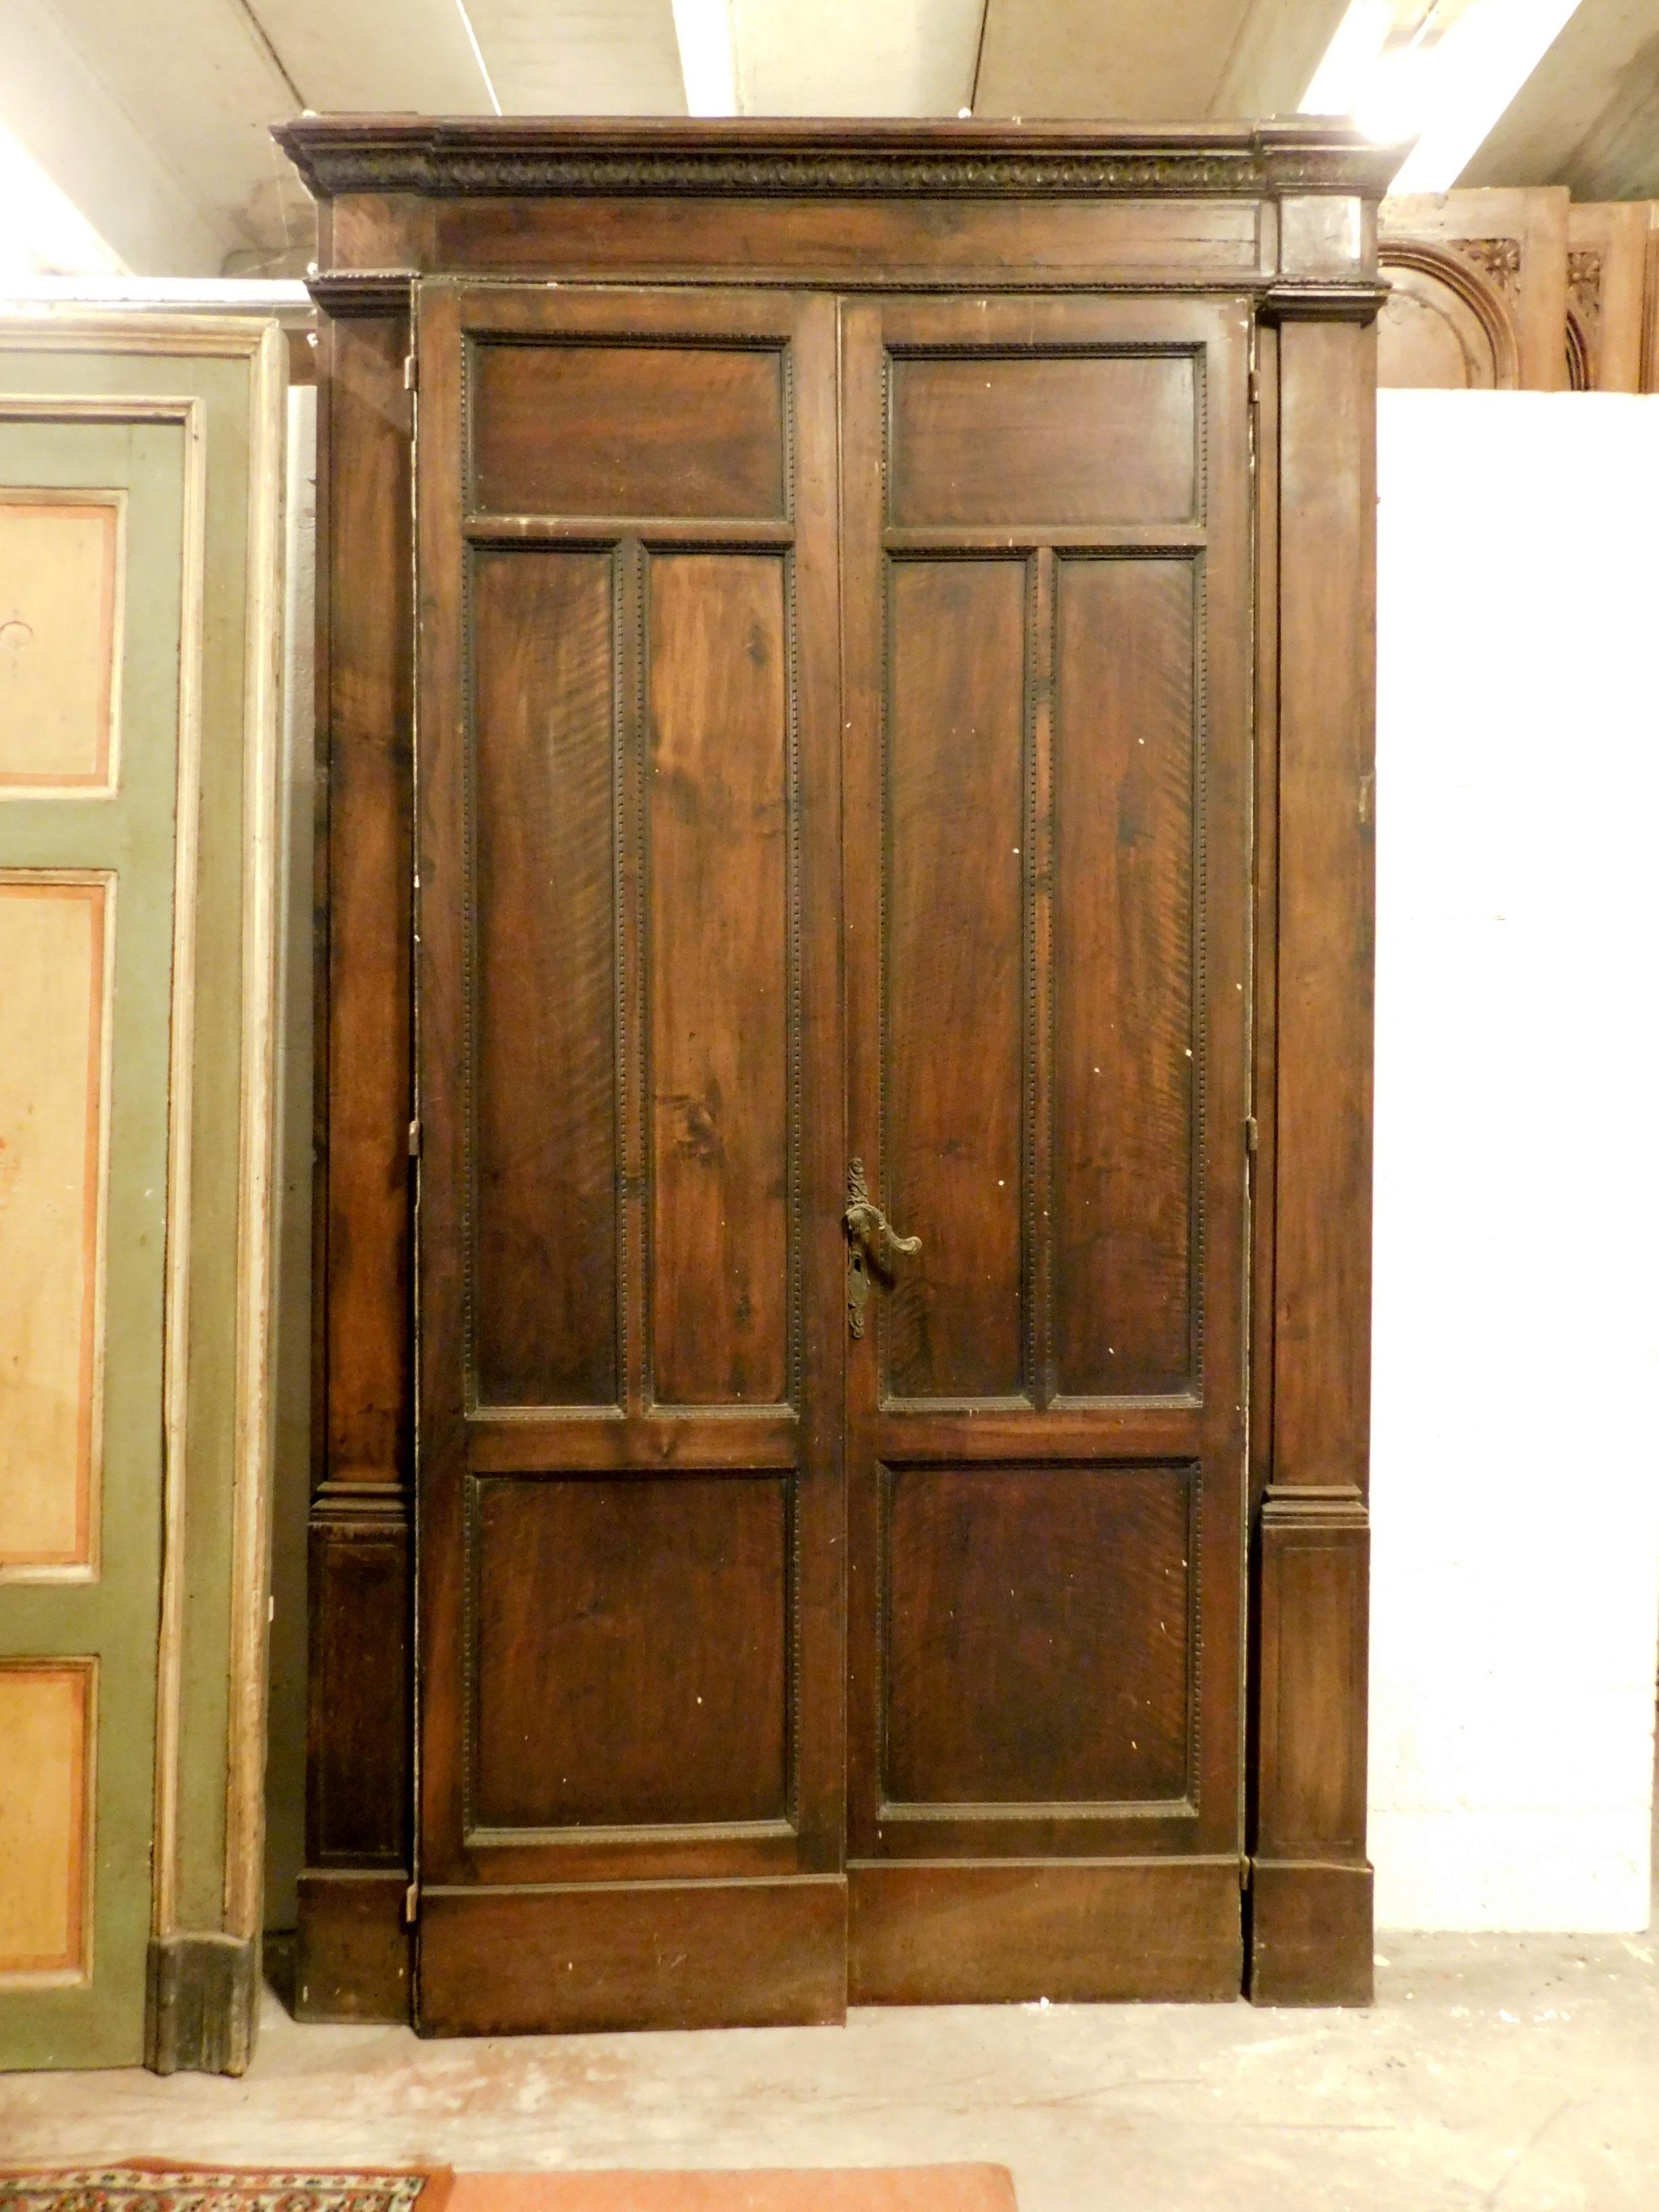 Porte ancienne à deux battants, sculptée en noyer et complète avec son cadre, fabriquée à la main dans le premier quart du XXe siècle, provenant de Turin (Italie), dimensions maximales 158 x 273 cm, largeur de la porte 123 x 249 cm.
Belle et